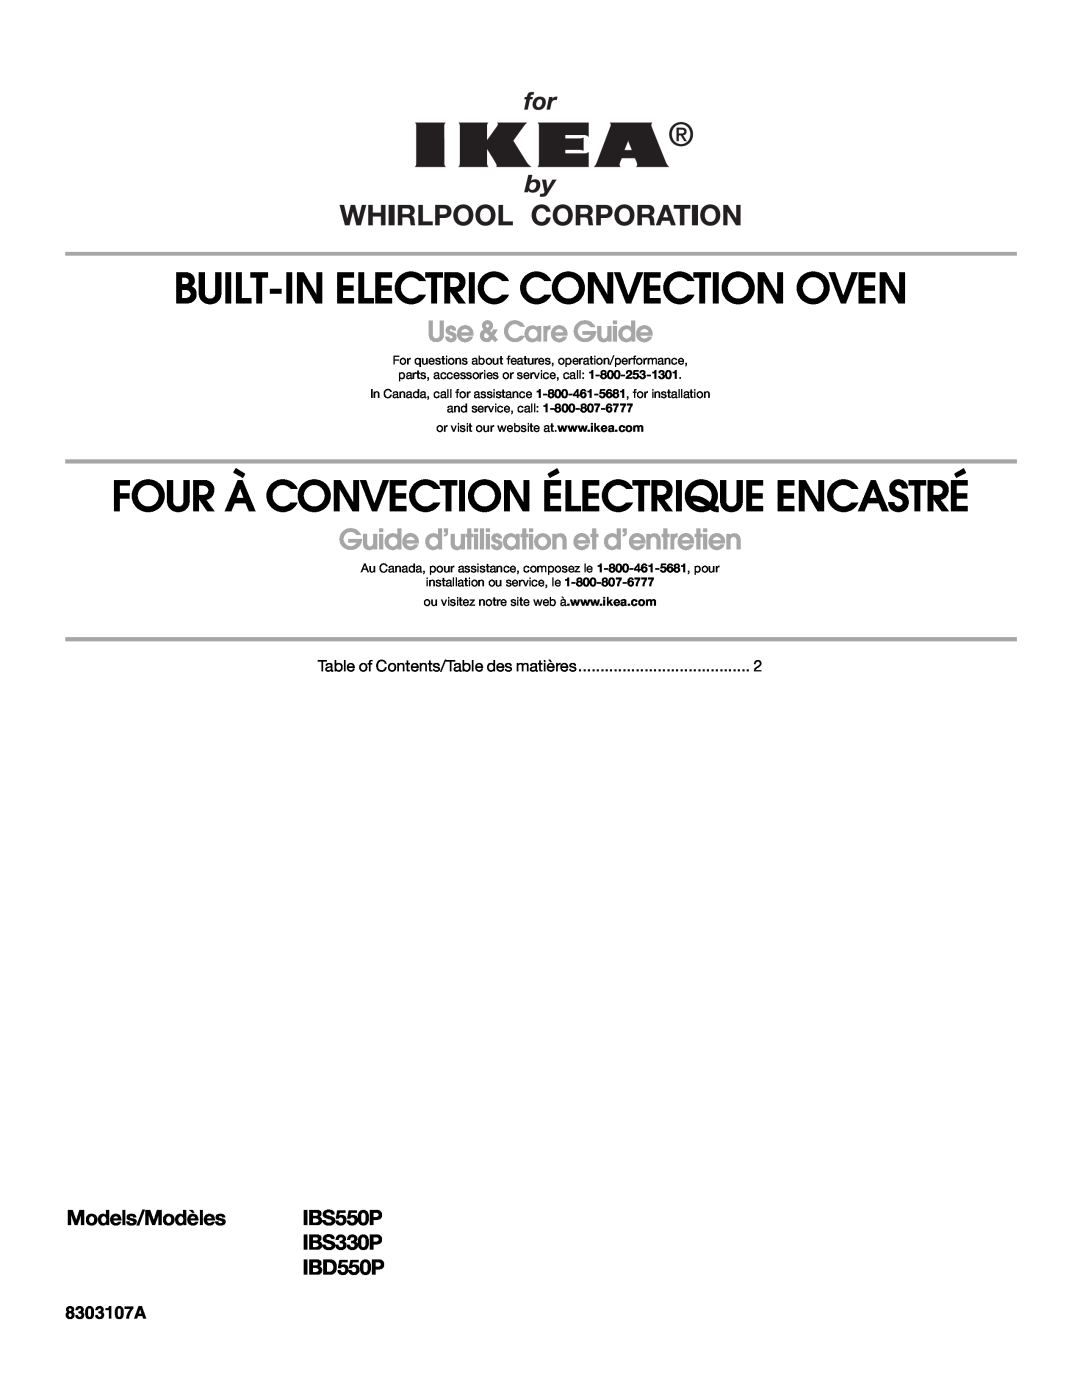 Whirlpool IBS550P manual Built-In Electric Convection Oven, Four À Convection Électrique Encastré, Use & Care Guide 